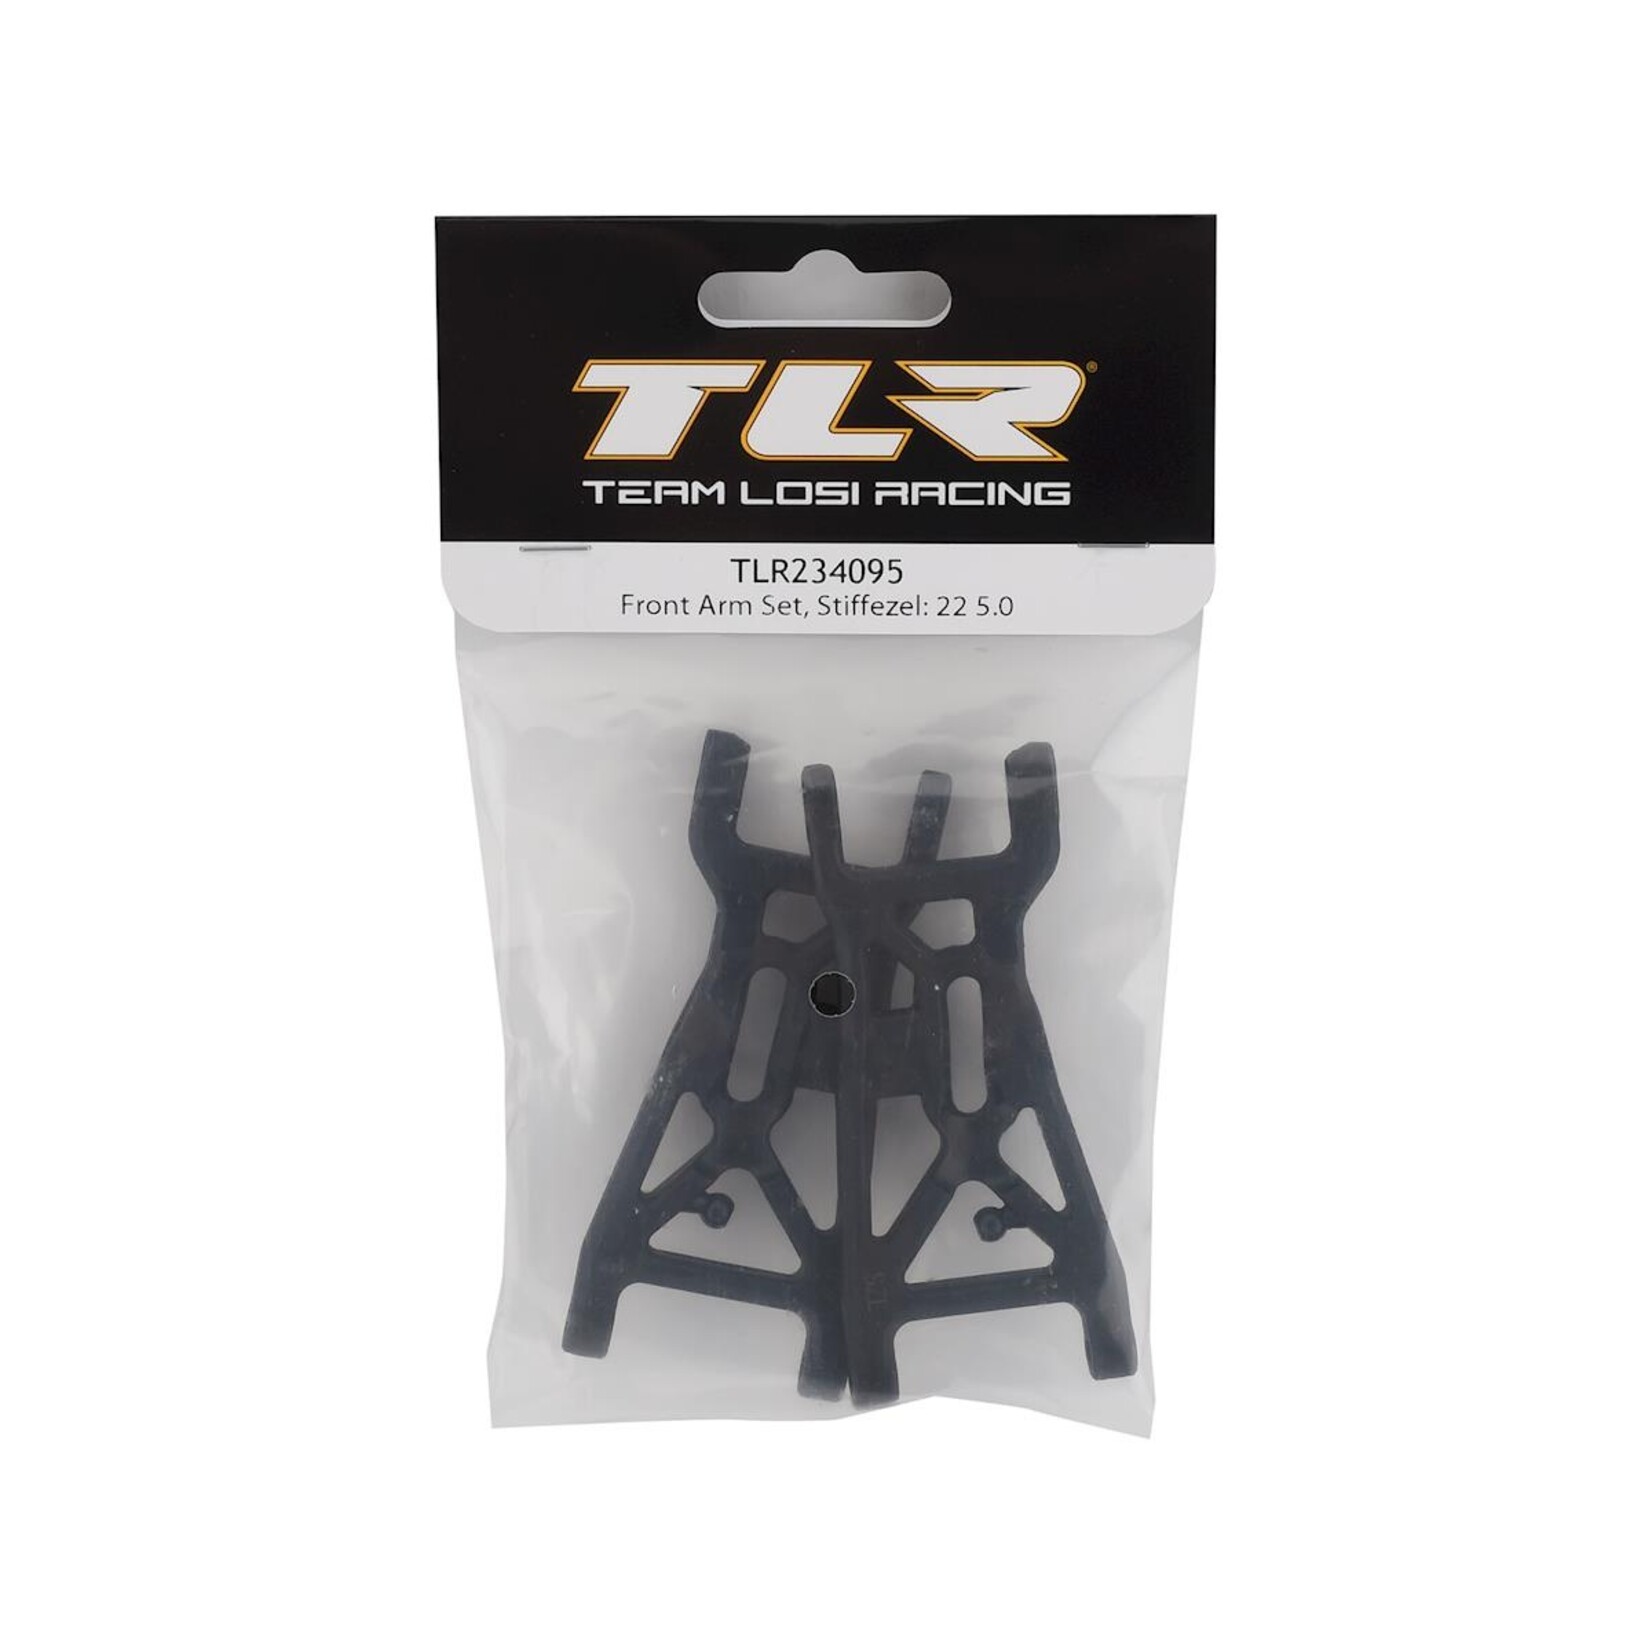 TLR Team Losi Racing 22 5.0 Stiffezel Front Arm Set #TLR234095